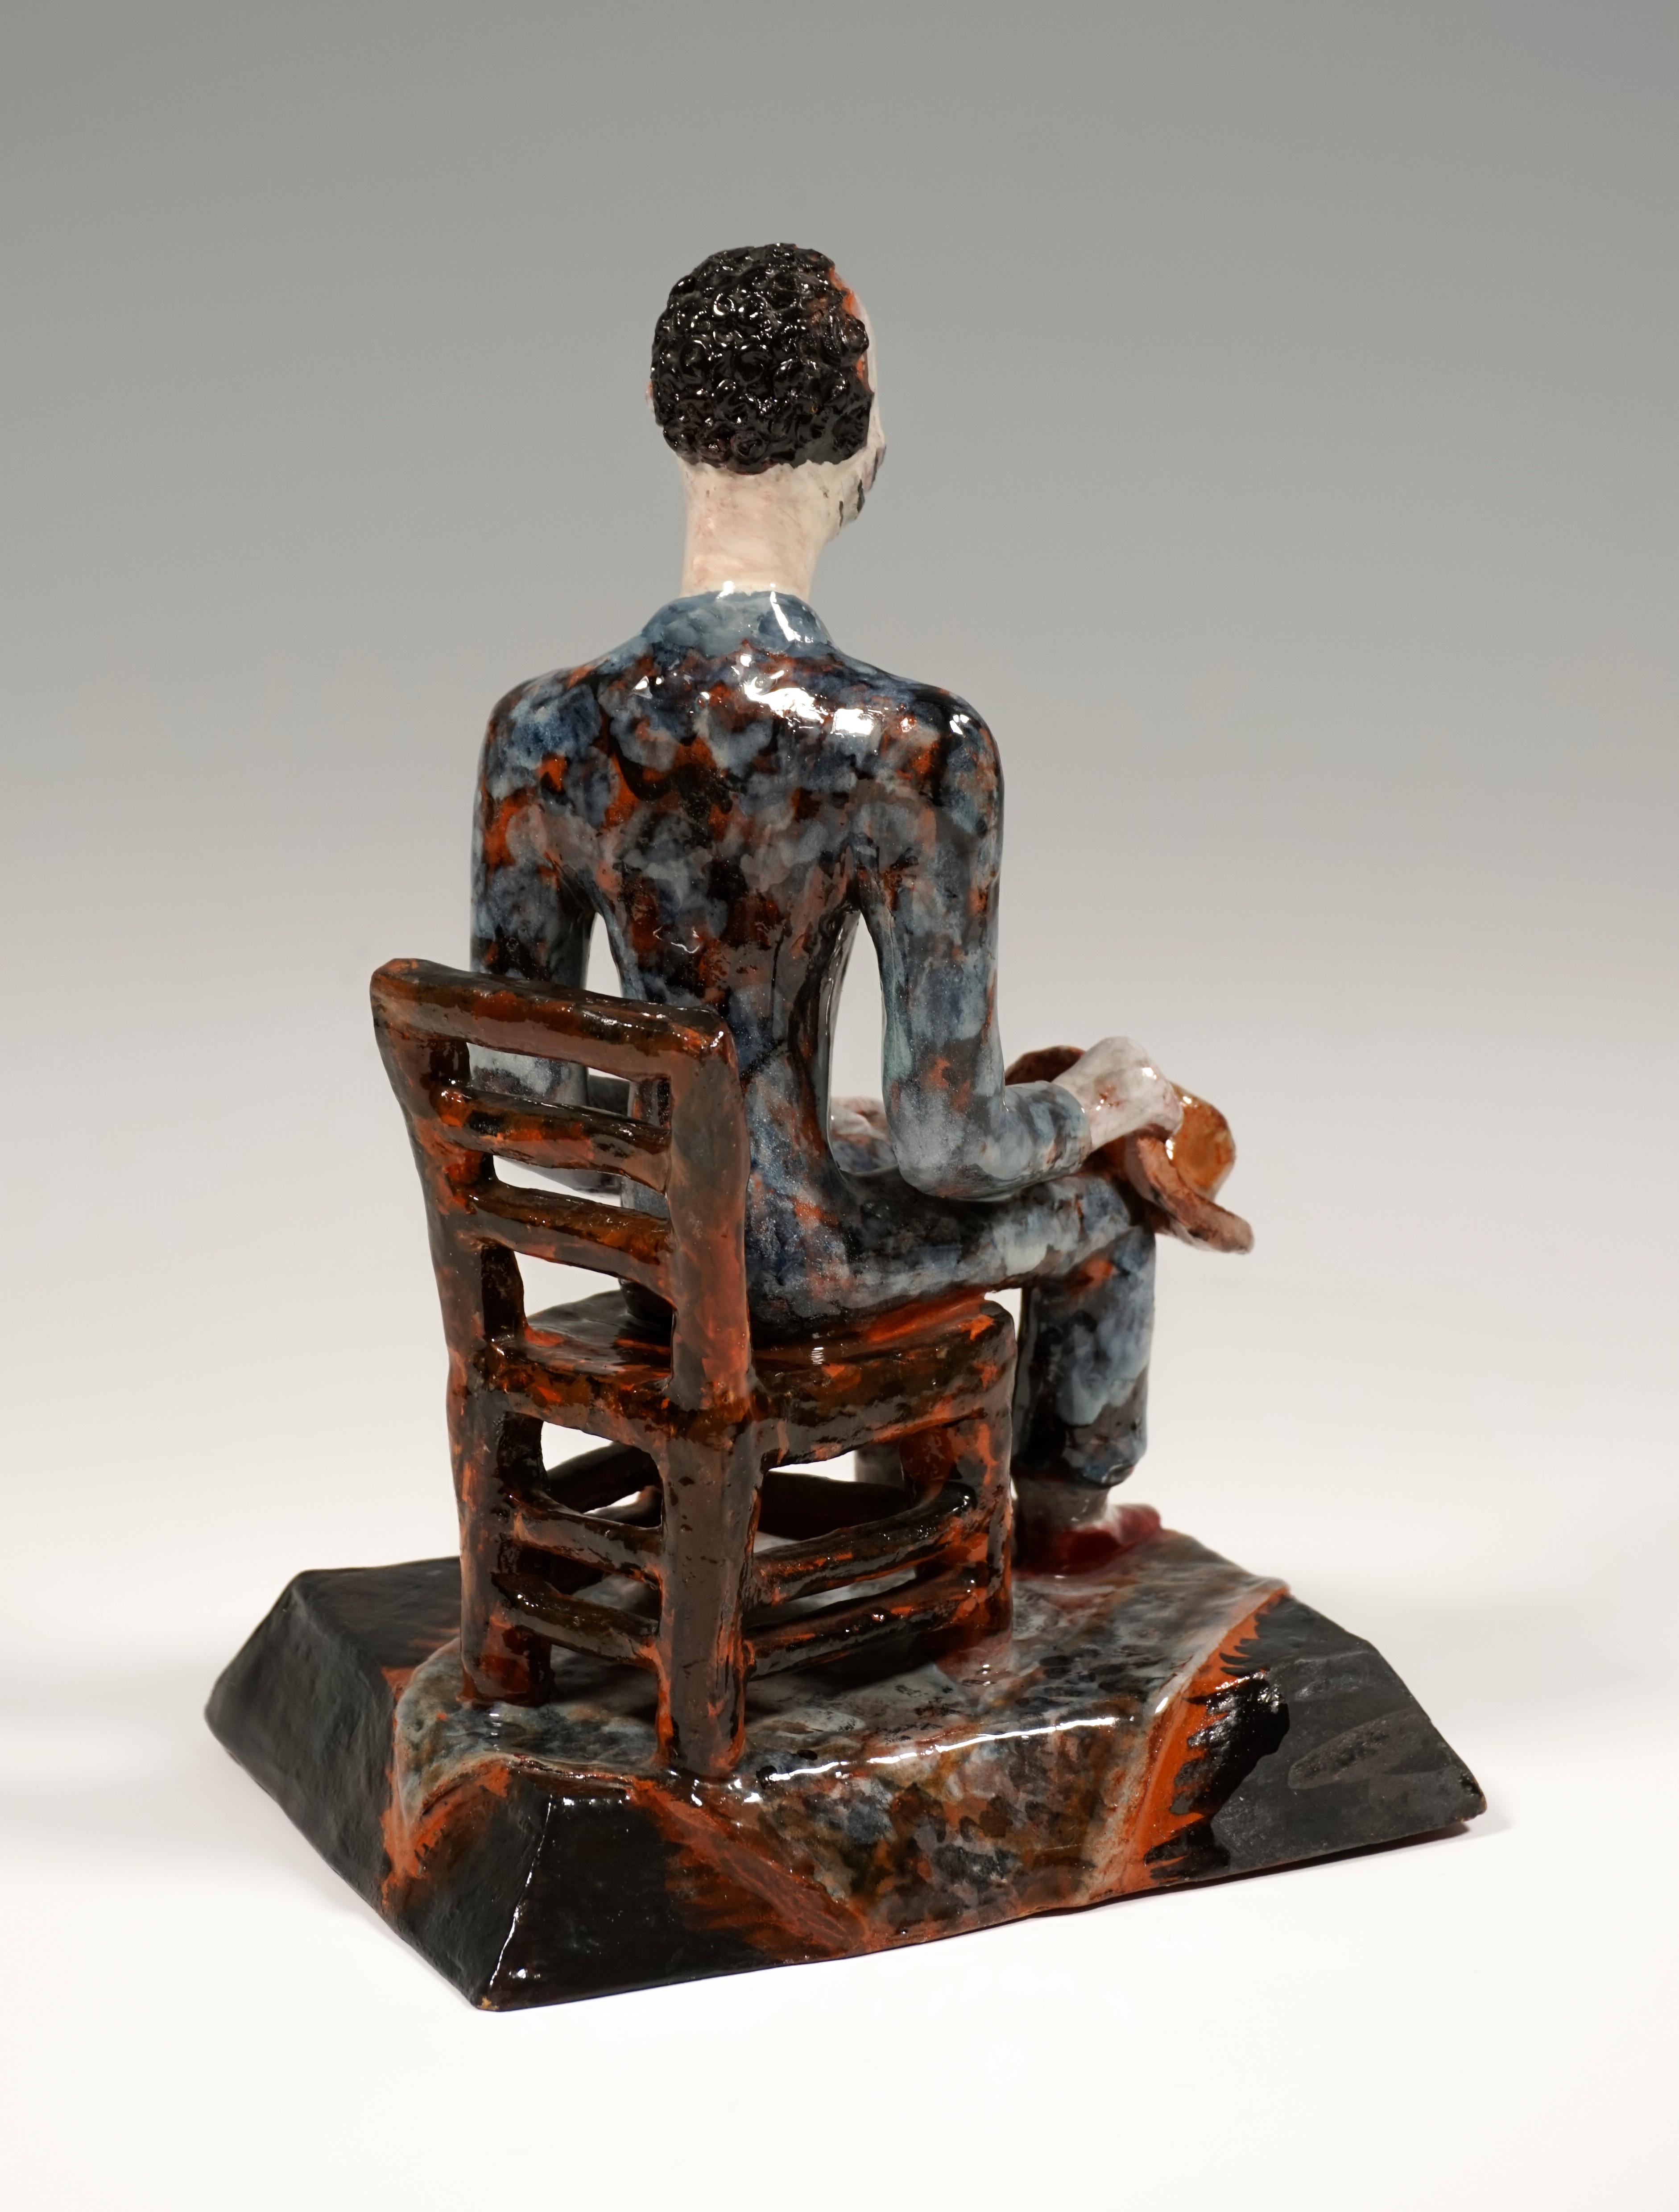 Expressionist Wiener Werkstaette Expressive Ceramic Figure 'Man On Chair' by Susi Singer 1927